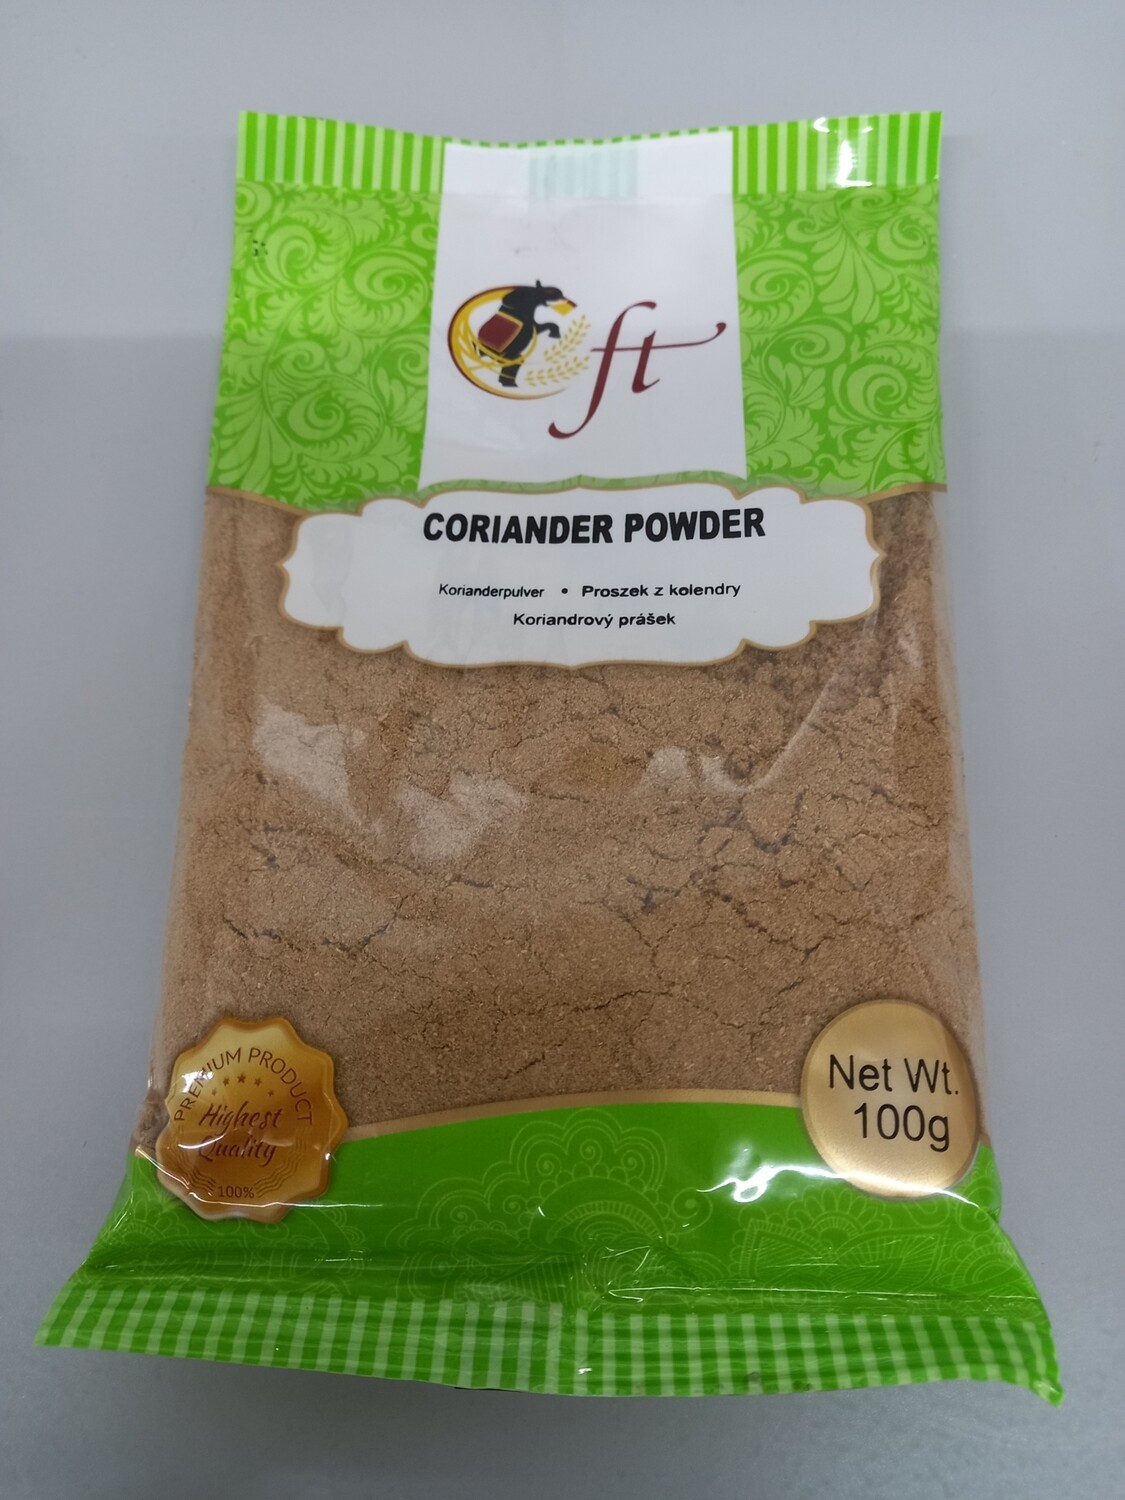 Elephant coriander powder (Korianderpulver) 100g